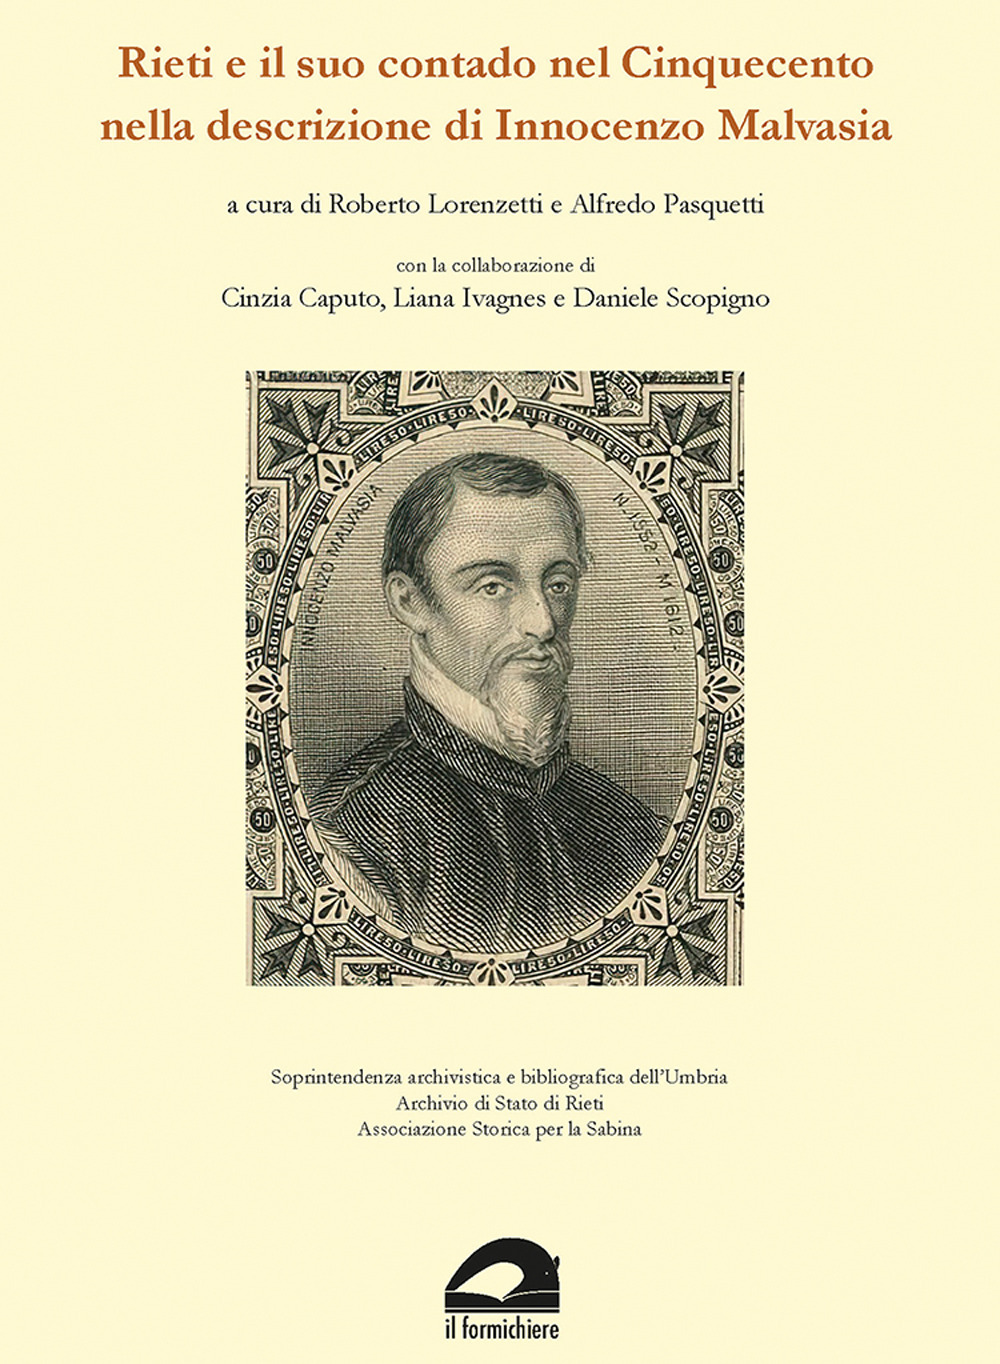 Rieti e il suo contado nel Cinquecento nella descrizione di Innocenzo Malvasia